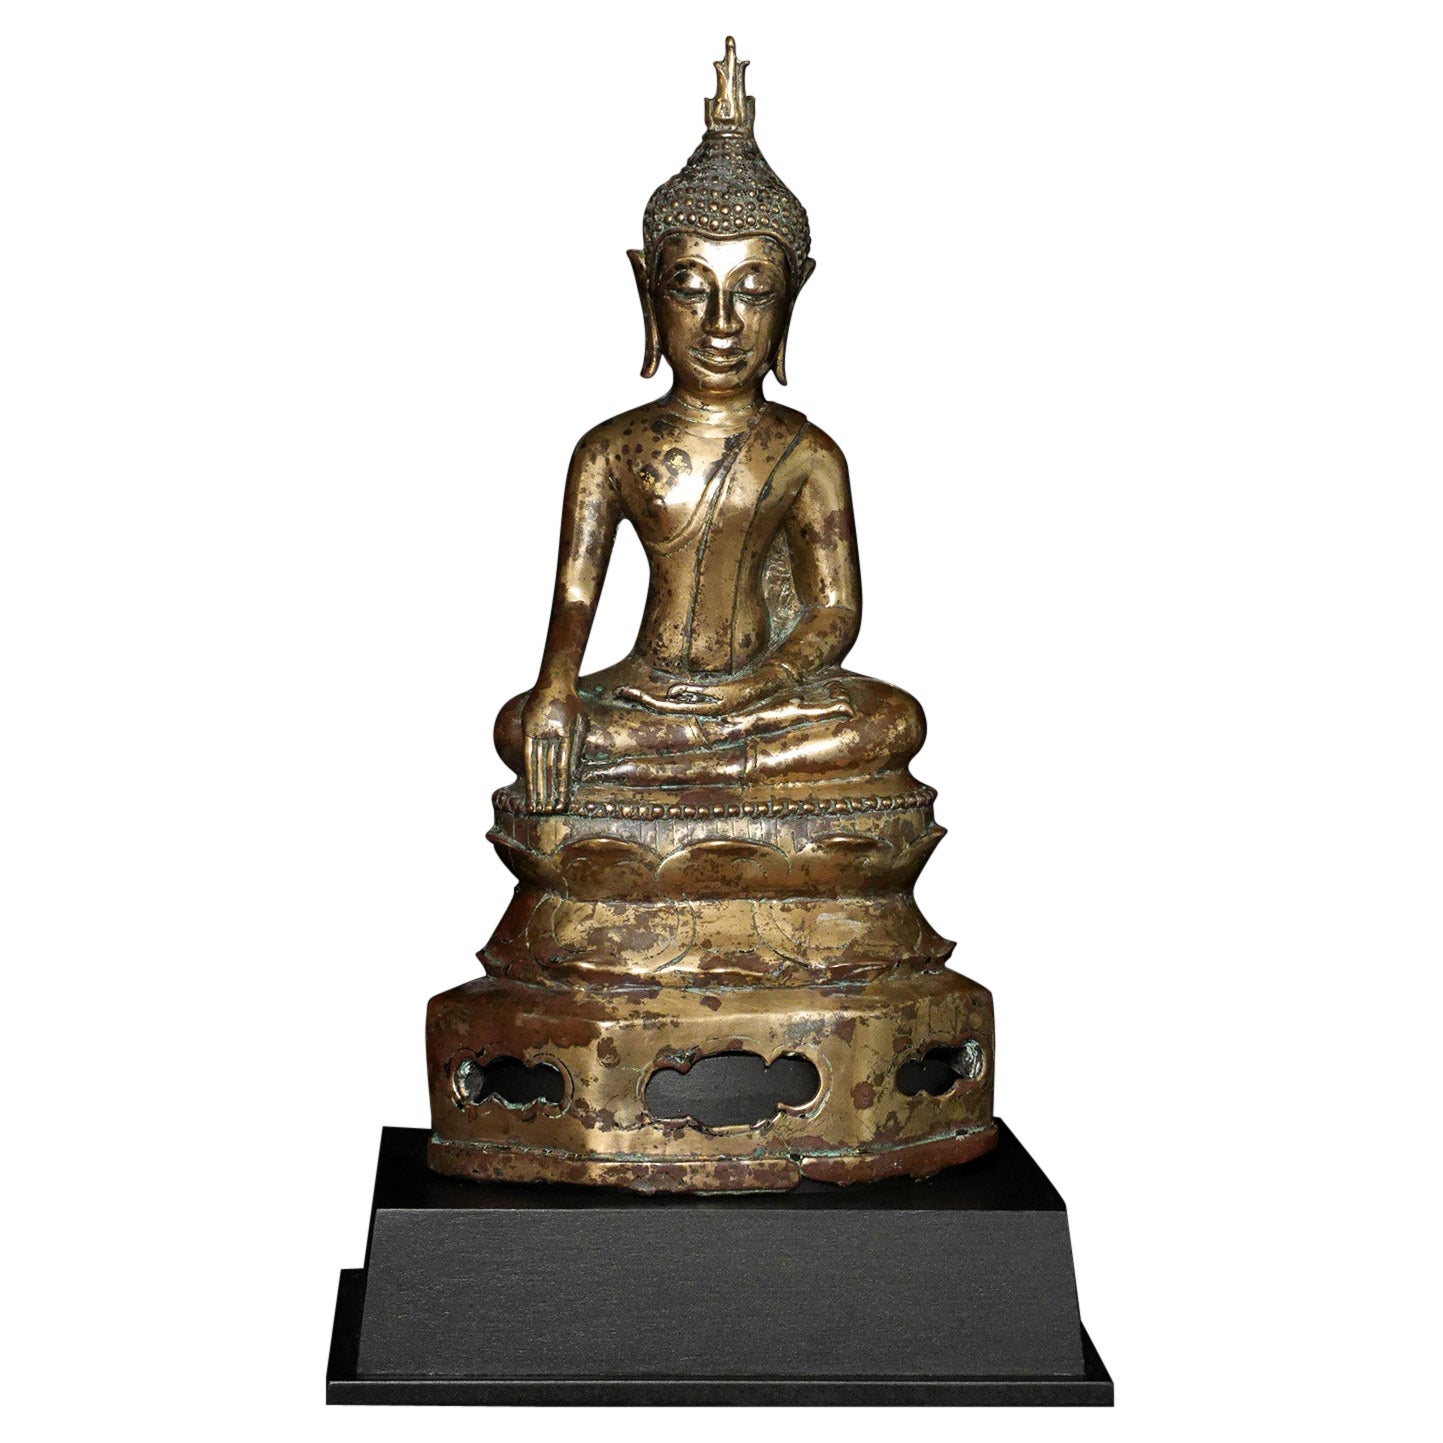 Bouddha en bronze du nord de la Thaïlande du XVIe siècle, très finement coulé et sculpté, 7920